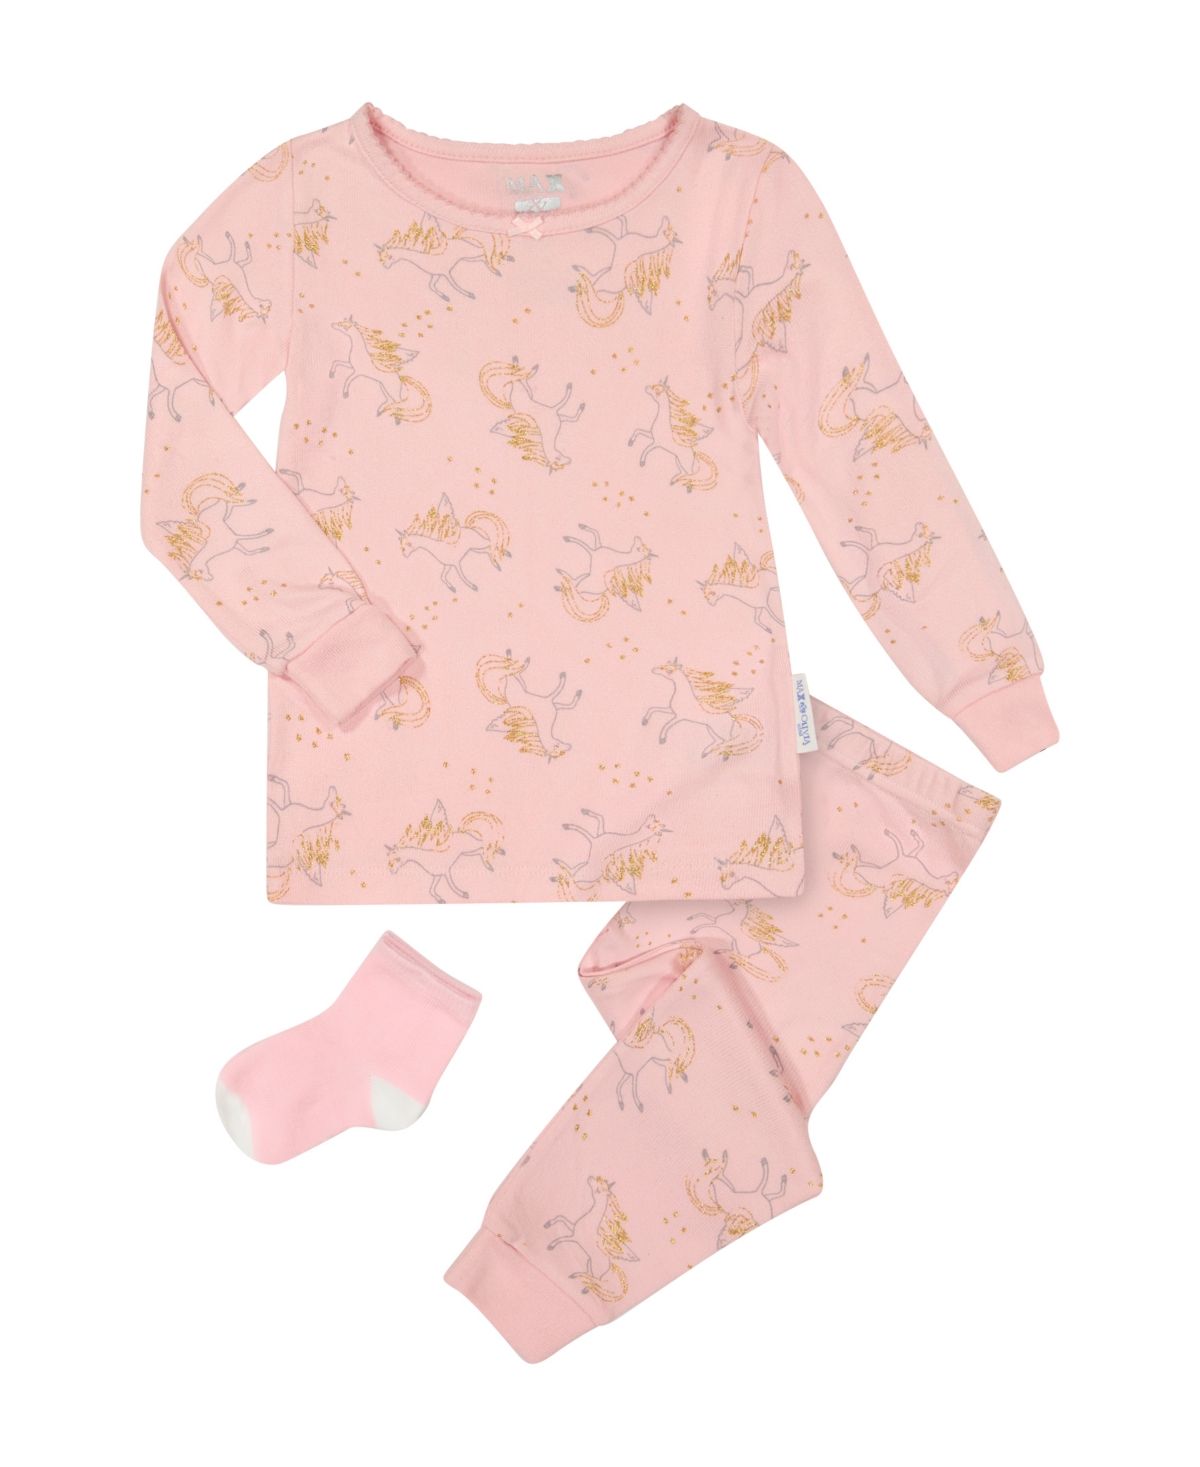 Max & Olivia Kids' Toddler Girls T-shirt, Pajama And Matching Socks, 3-piece Set In Pink